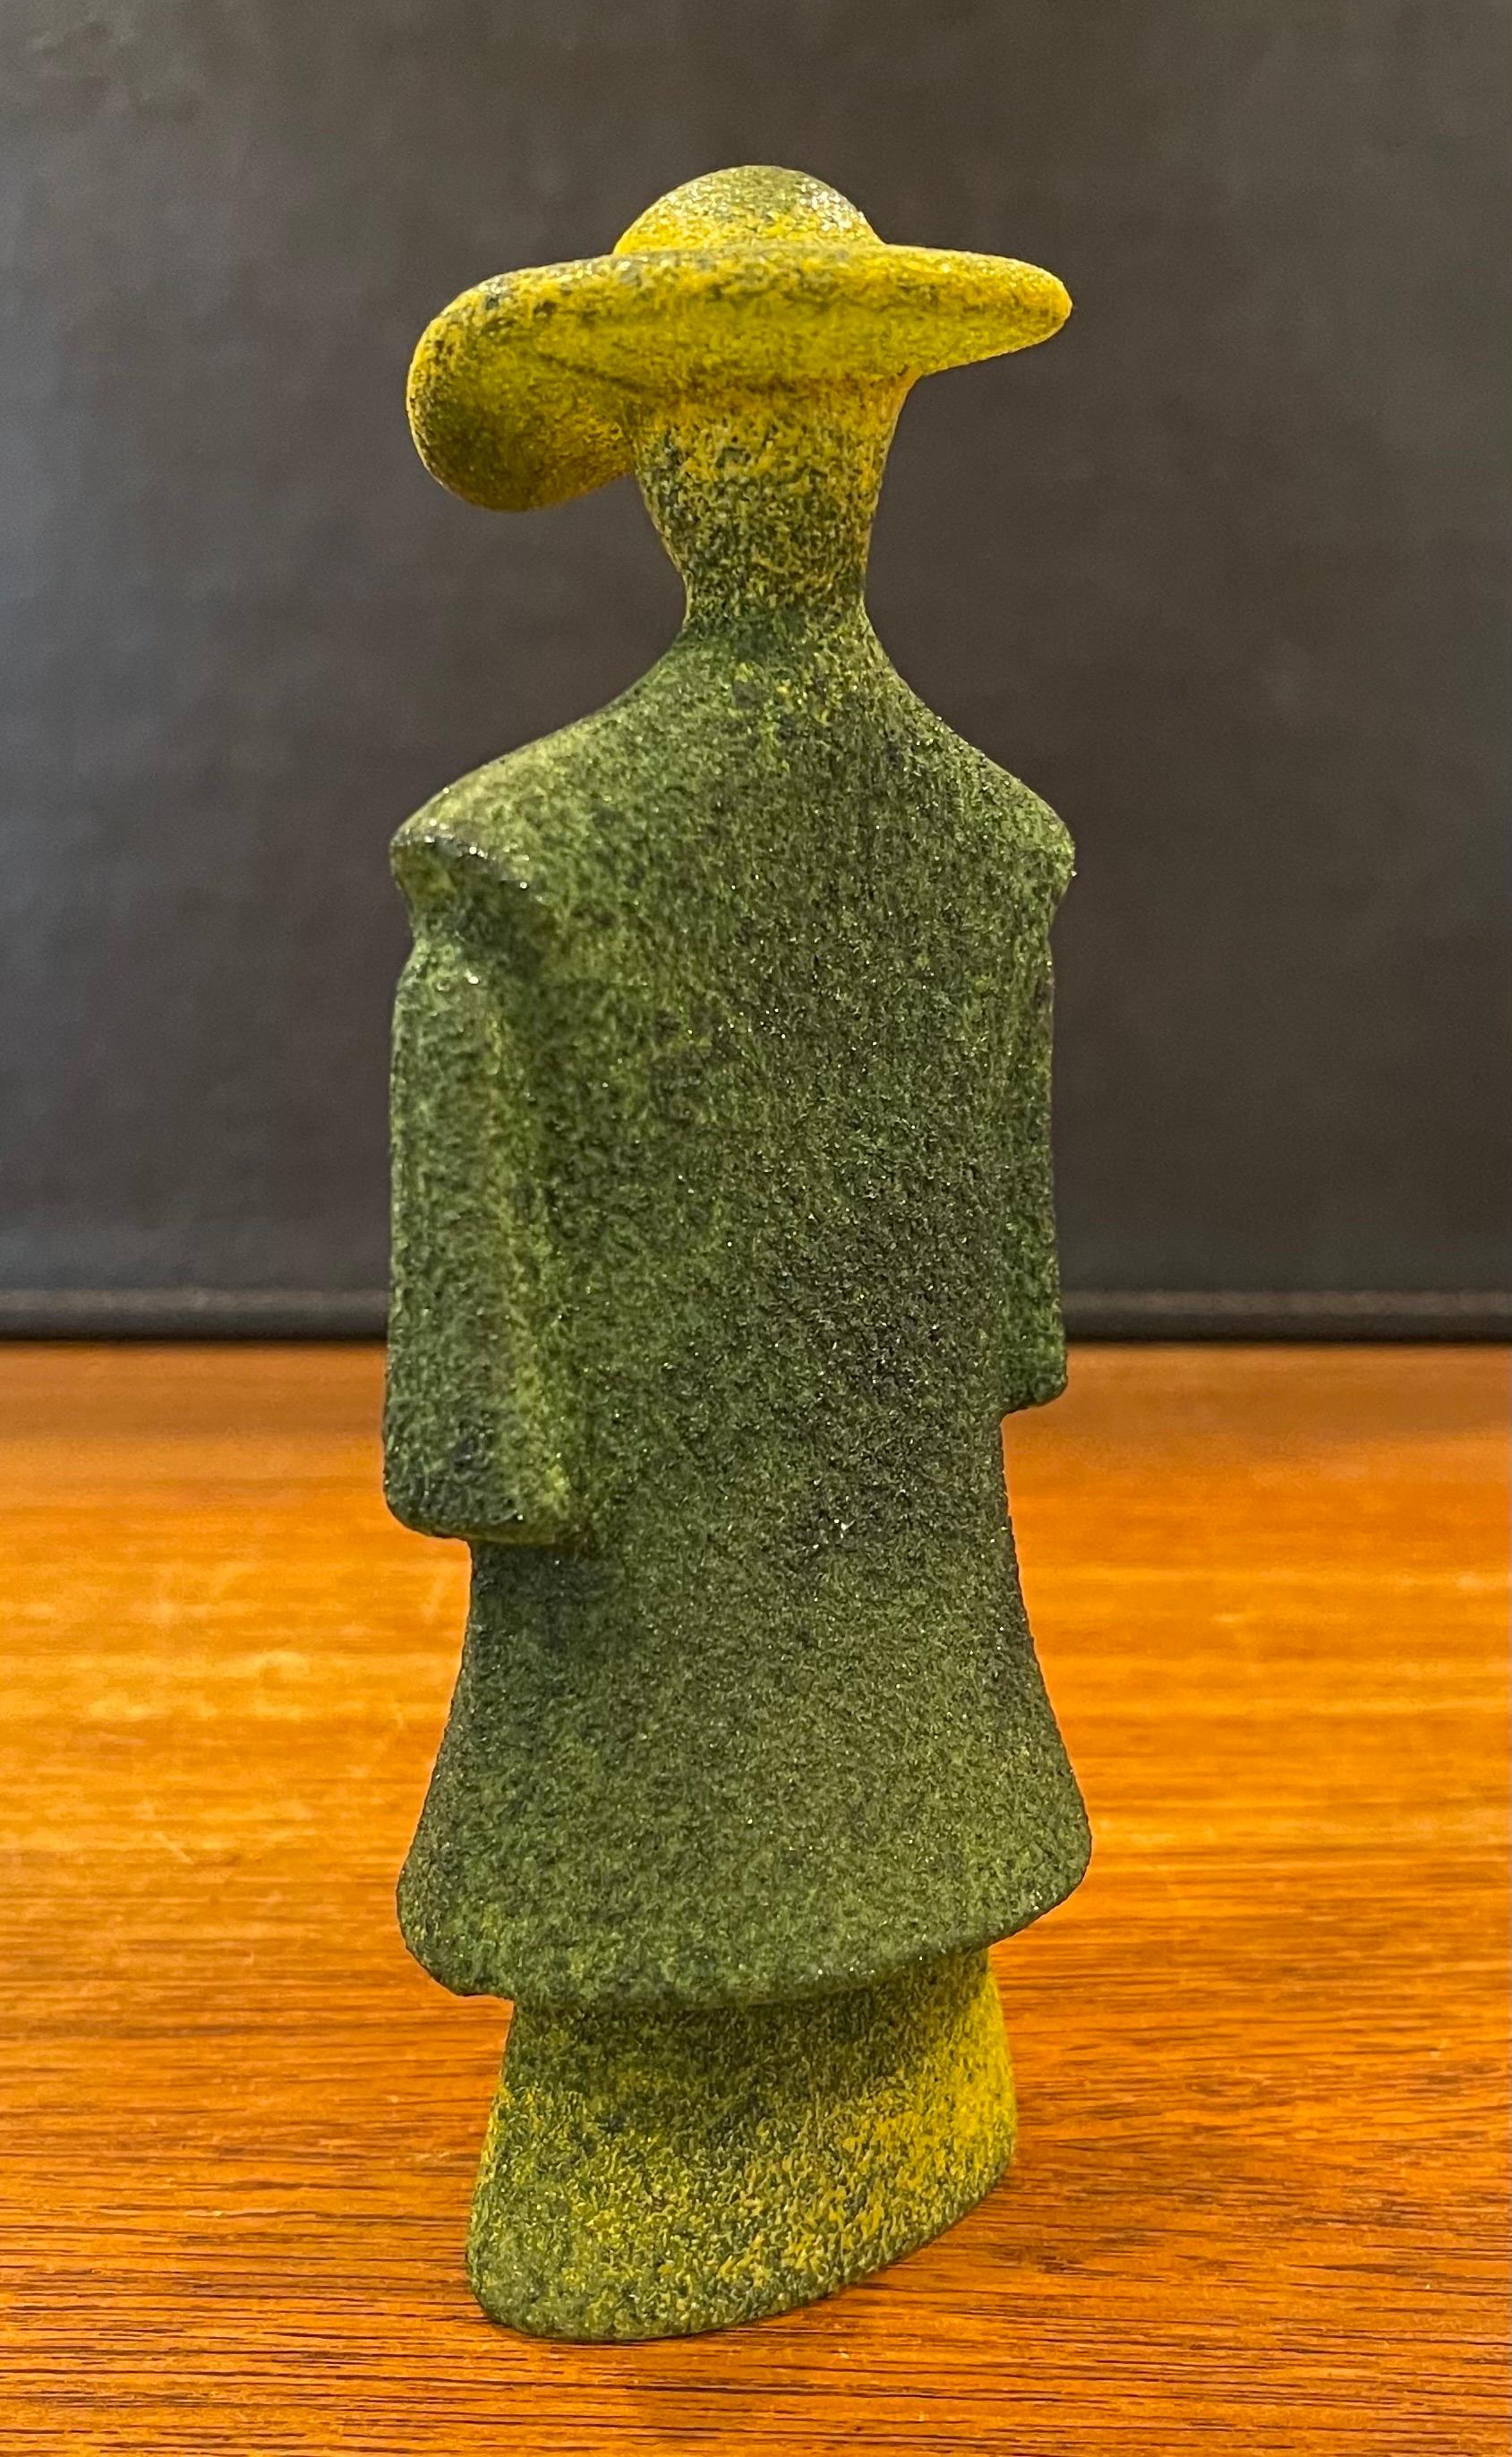 Poncho Green Art Glass Catwalk Sculpture by Kjell Engman for Kosta Boda Sweden For Sale 3